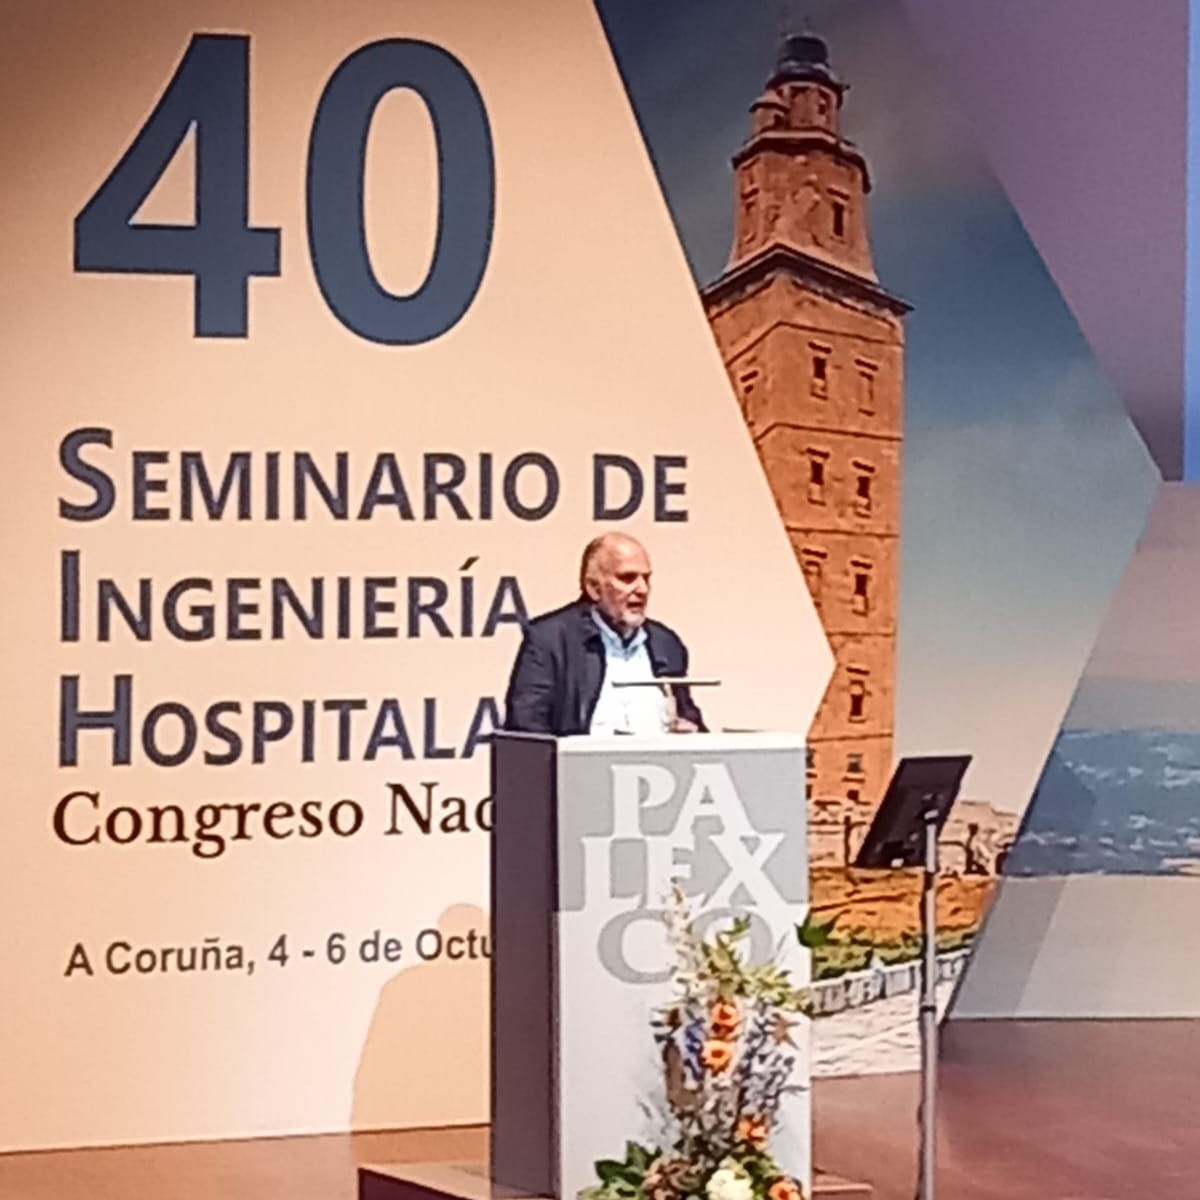 Sostenibilidad, ciberseguridad, formación y tecnología ejes del 40 Seminario de Ingeniería Hospitalaria de A Coruña